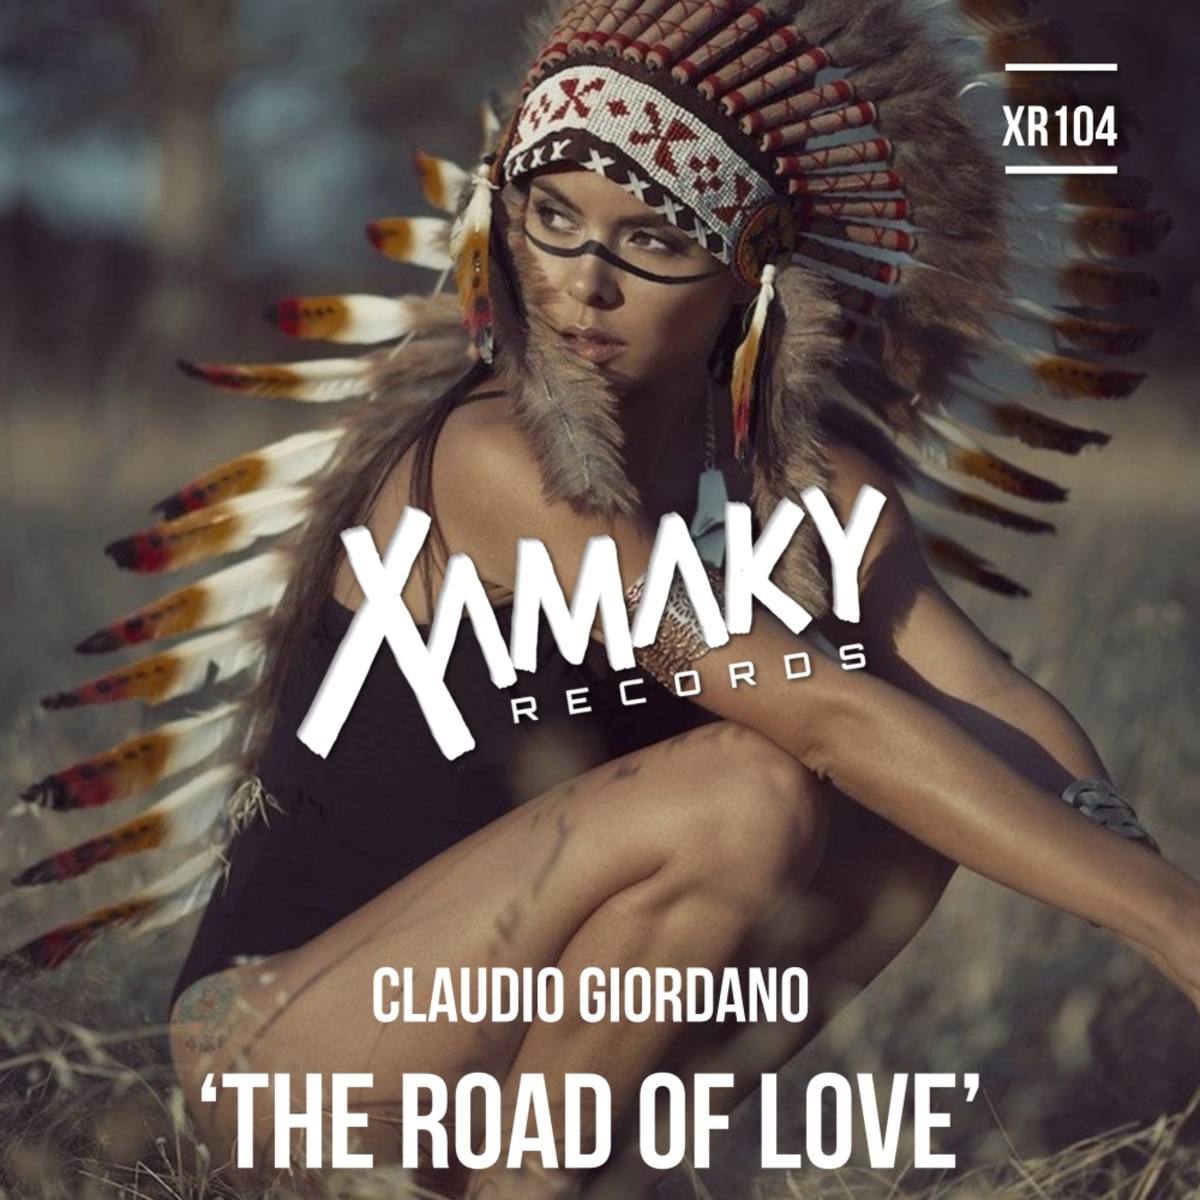 Claudio Giordano - The Road of Love / Xamaky Records